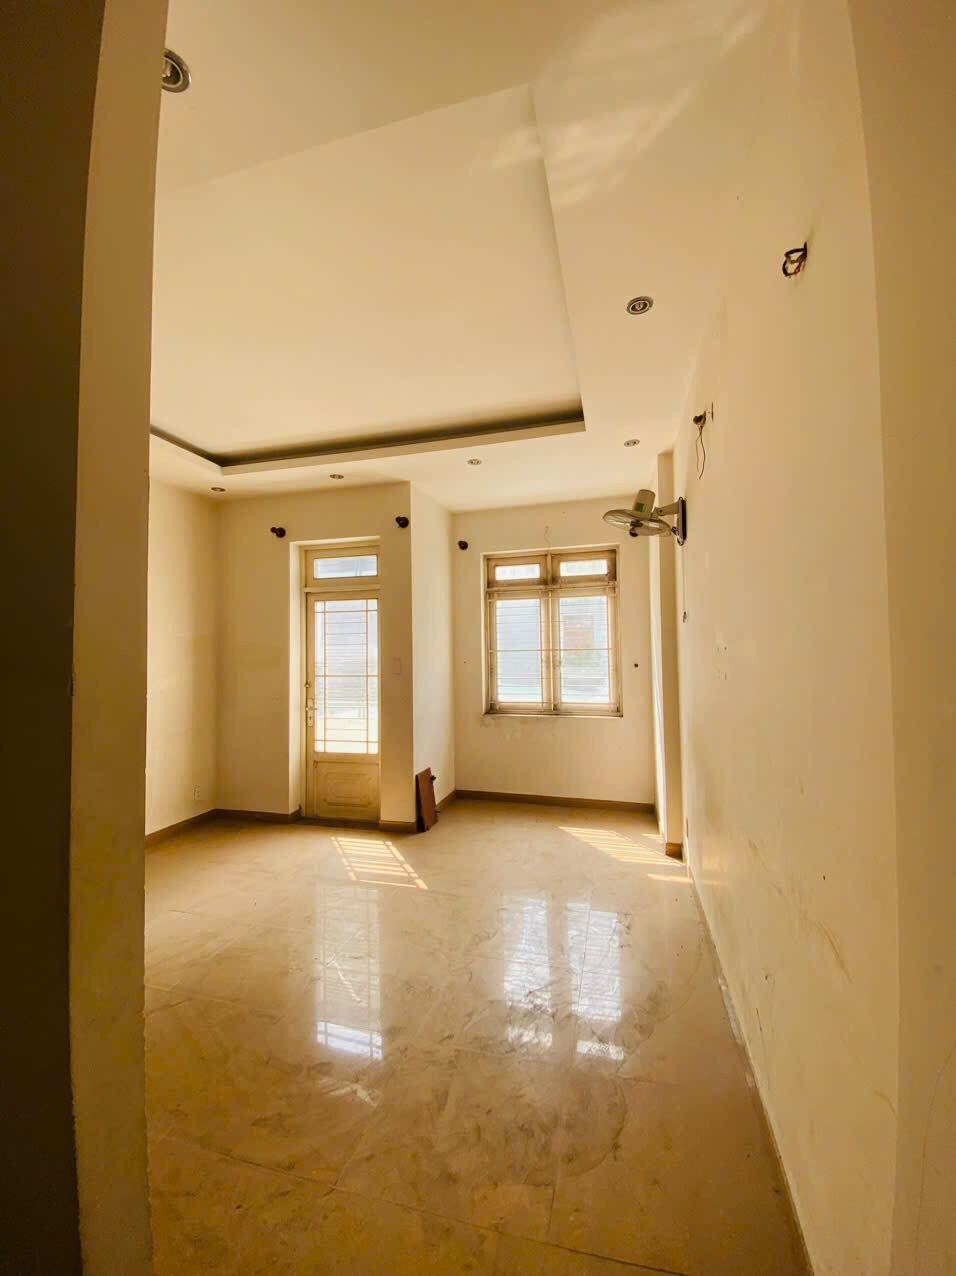 Cần bán gấp căn nhà 3 Lầu Mặt Tiền đường số, P. Linh Trung, dt 123 m² giá 9,5 tỷ TL - Ảnh 5